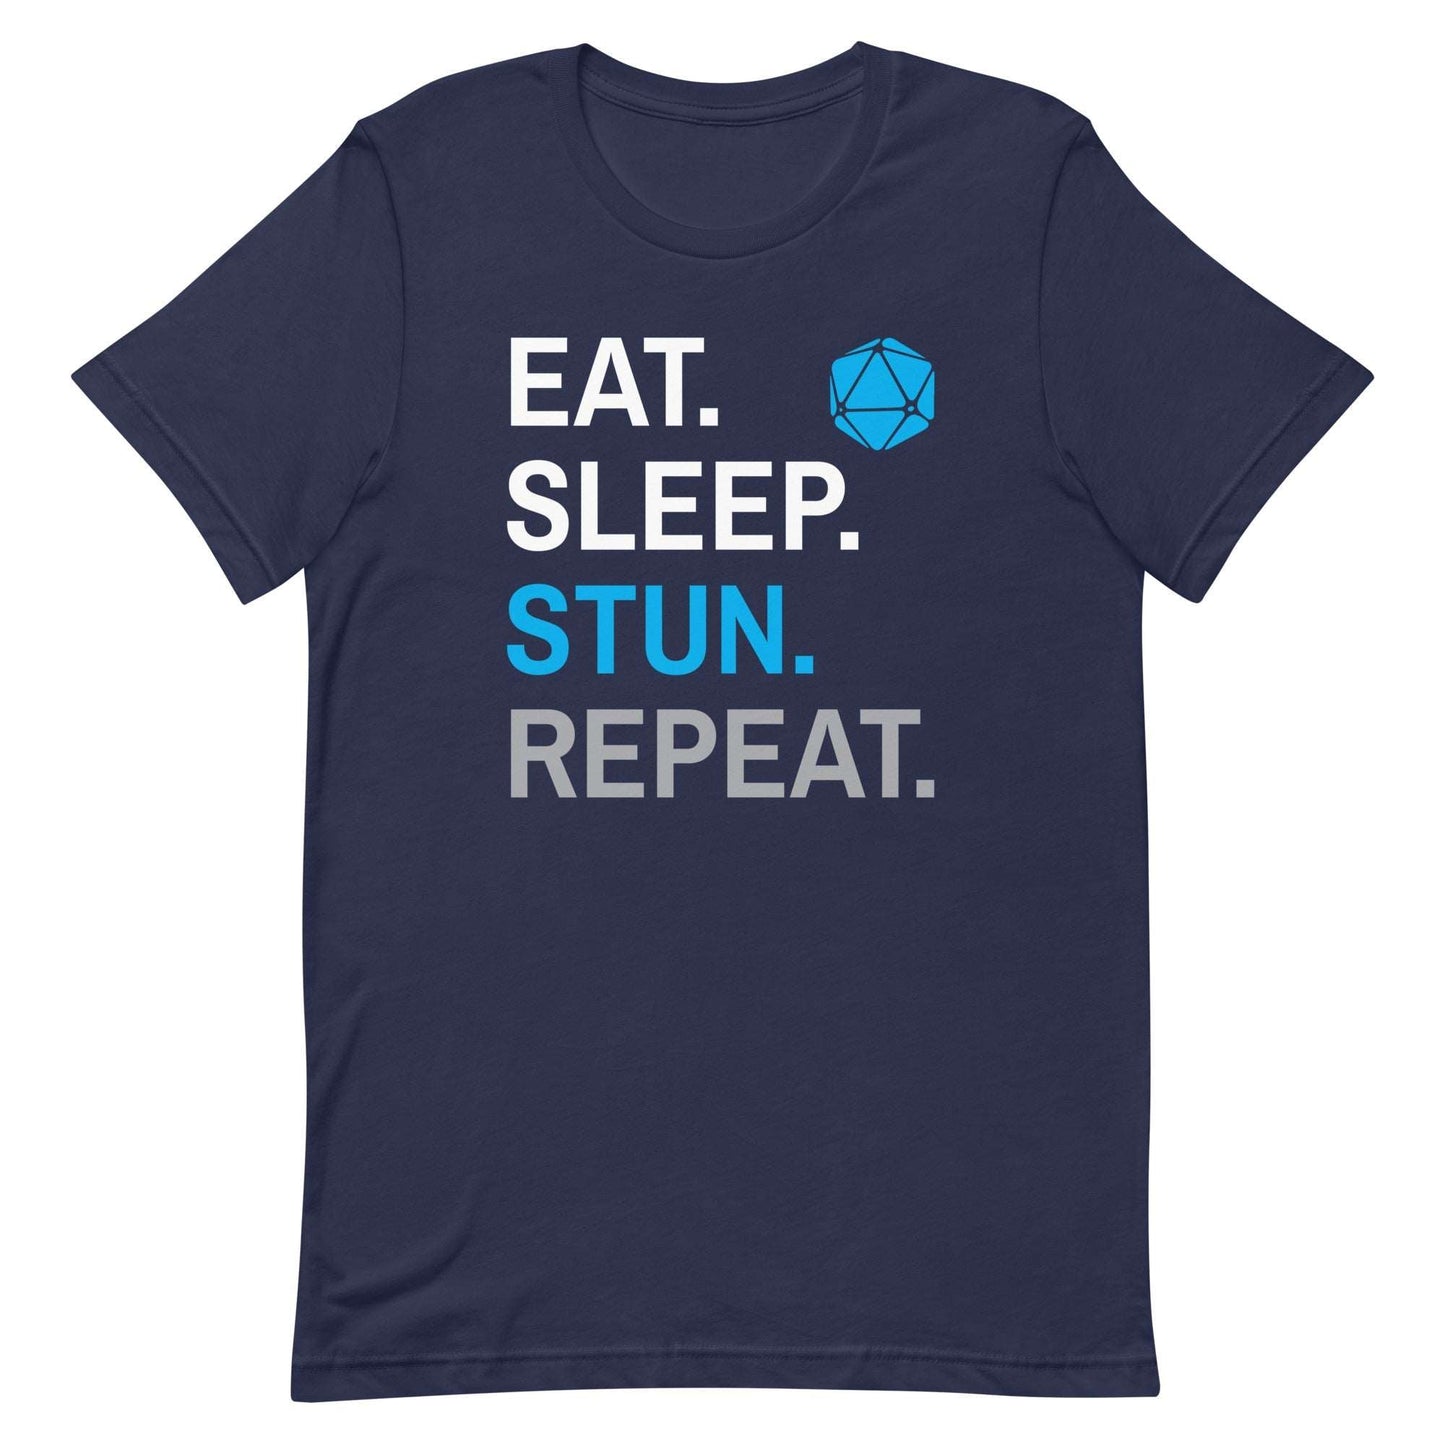 Monk Class T-Shirt – 'Eat, Sleep, Stun, Repeat' – Dungeons & Dragons Monk Apparel T-Shirt Navy / S